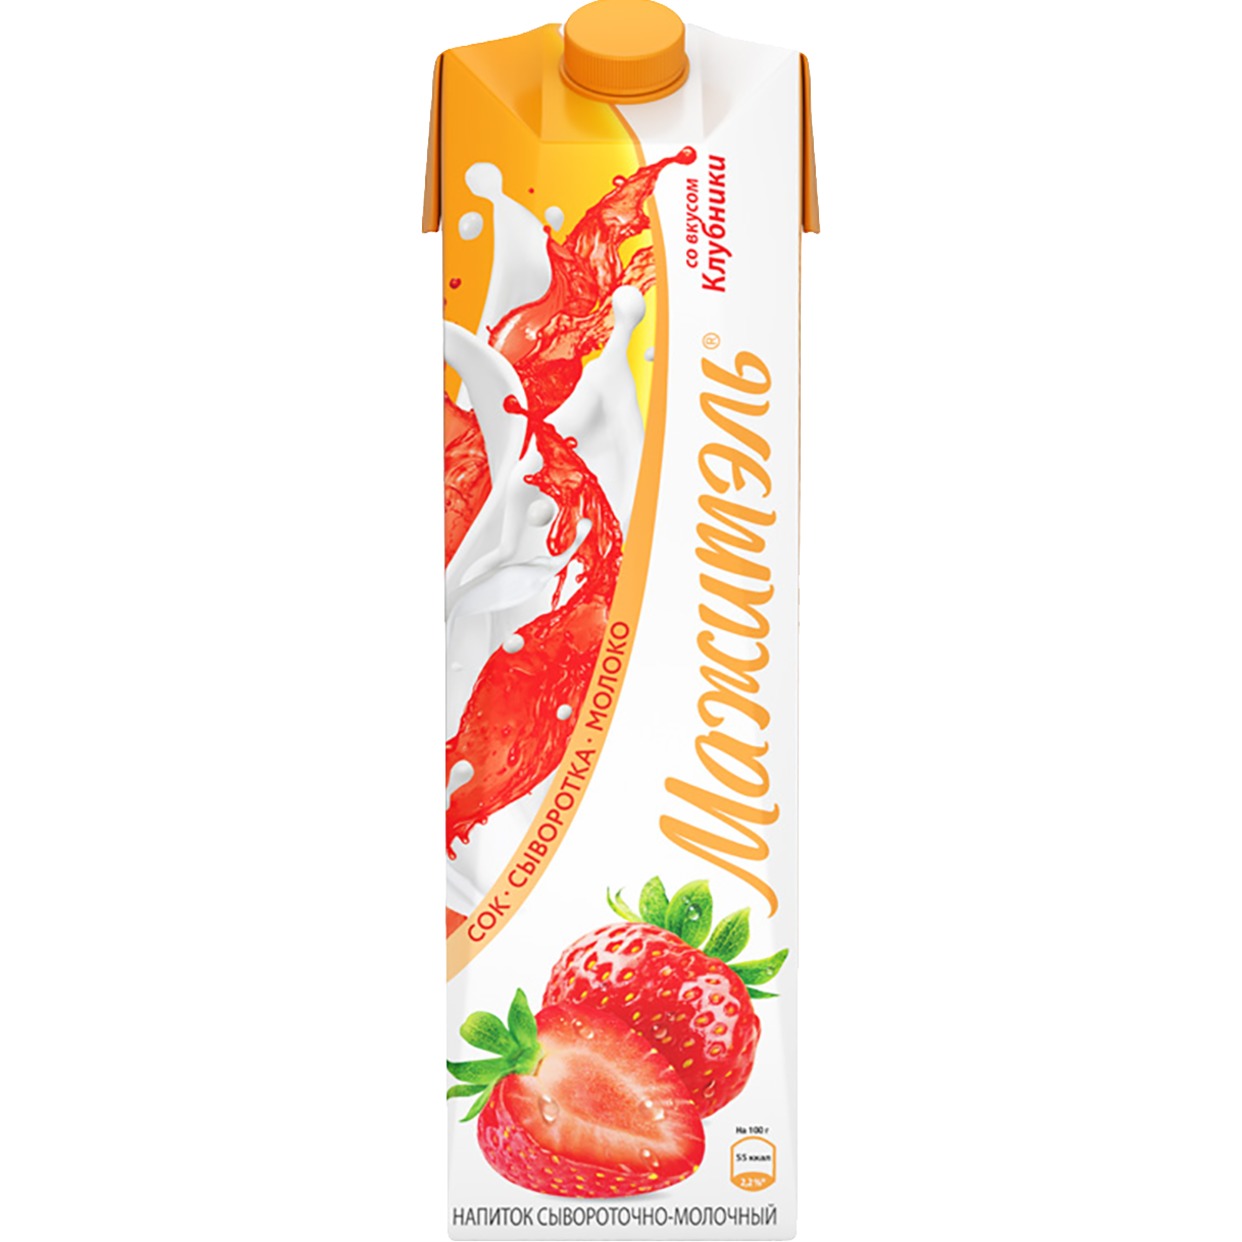 Напиток "Мажитэль" фруктово-молочный со вкусом клубники 950г по акции в Пятерочке